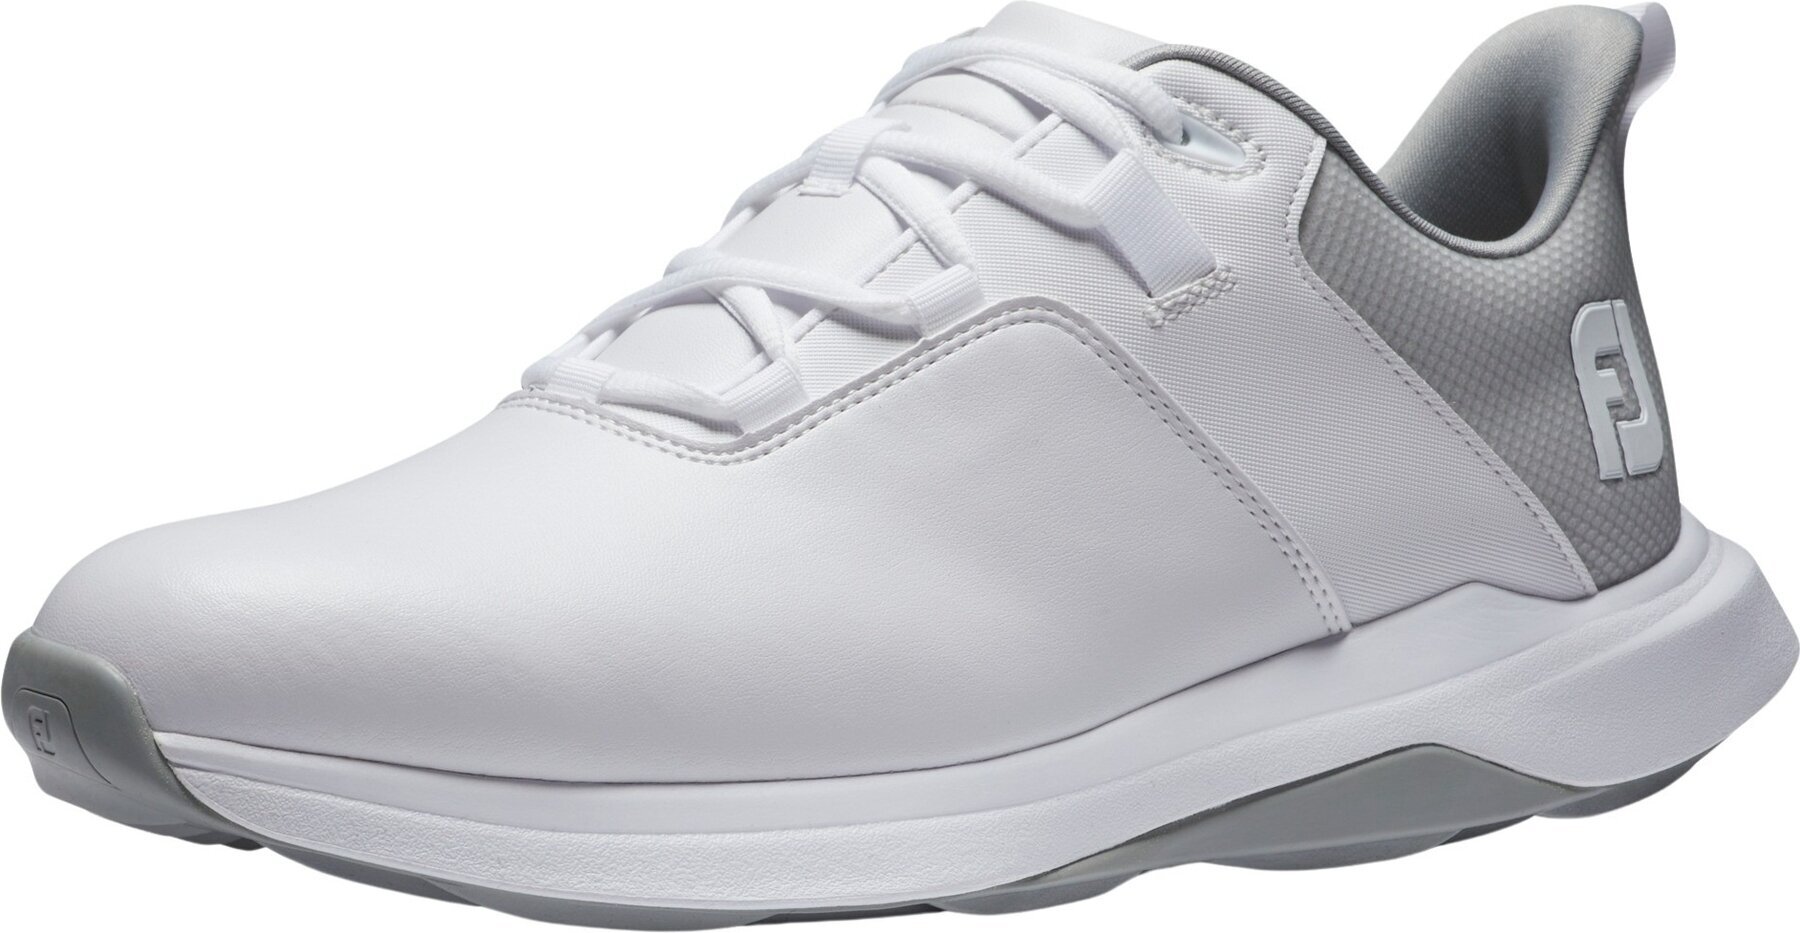 Calçado de golfe para homem Footjoy ProLite Mens Golf Shoes White/Grey 42